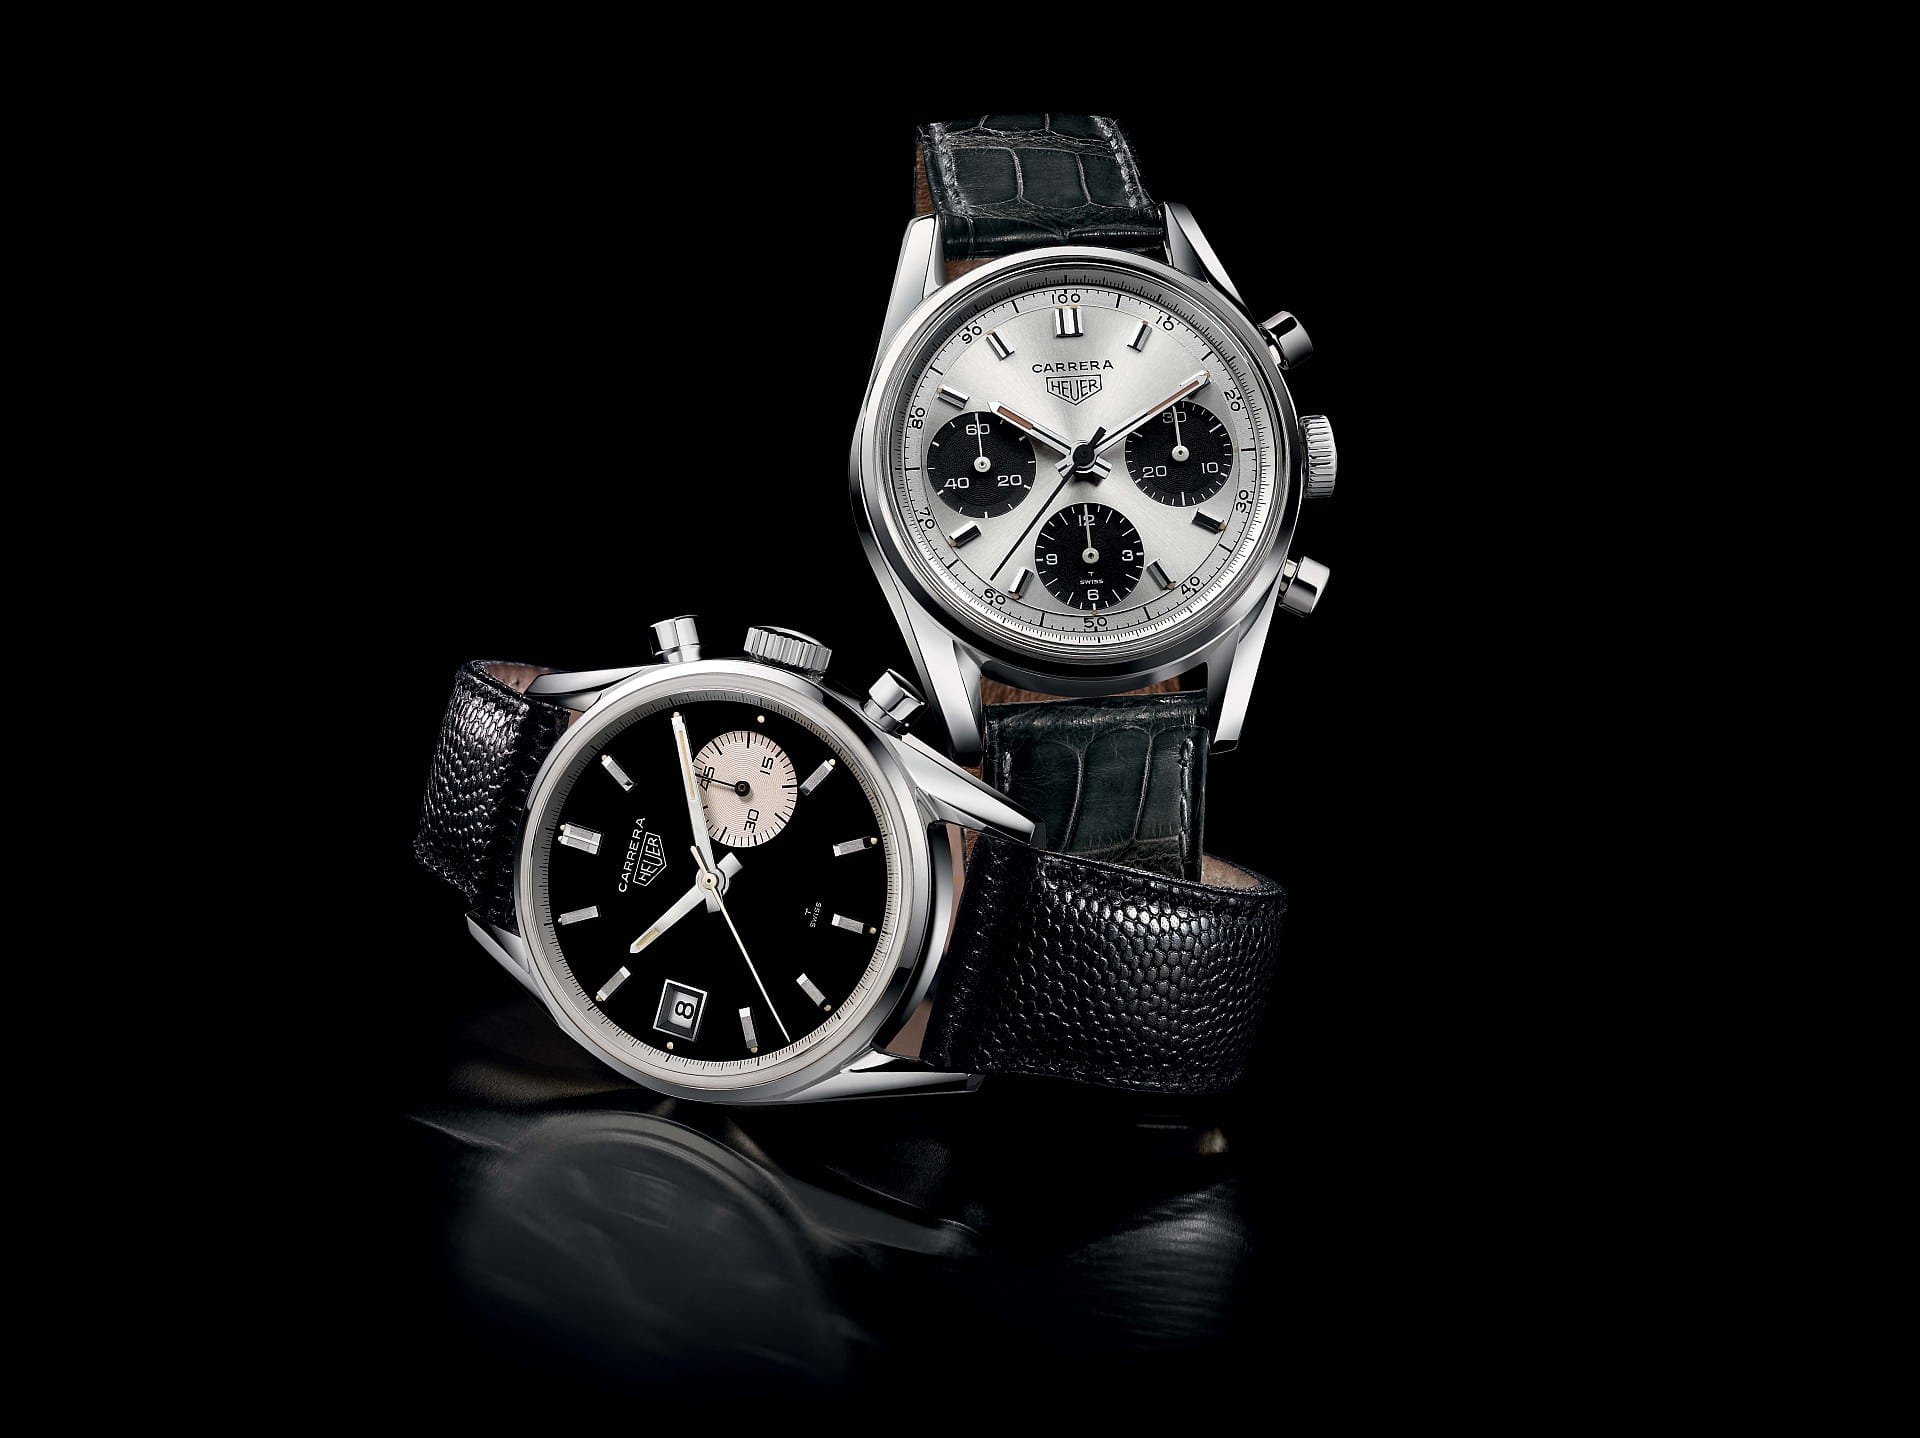 Diese Uhr könnte man im originalen Top-Zustand gegen ein Einfamilienhaus tauschen: Die Heuer Carrera aus dem Jahr 1963. Sie trägt den Namen des damals berühmten Autorennens "Carrera Panamericana" in Mexiko. Bei einer "Christie's"-Auktion erzielte sie einen Preis von 300.000 Euro.